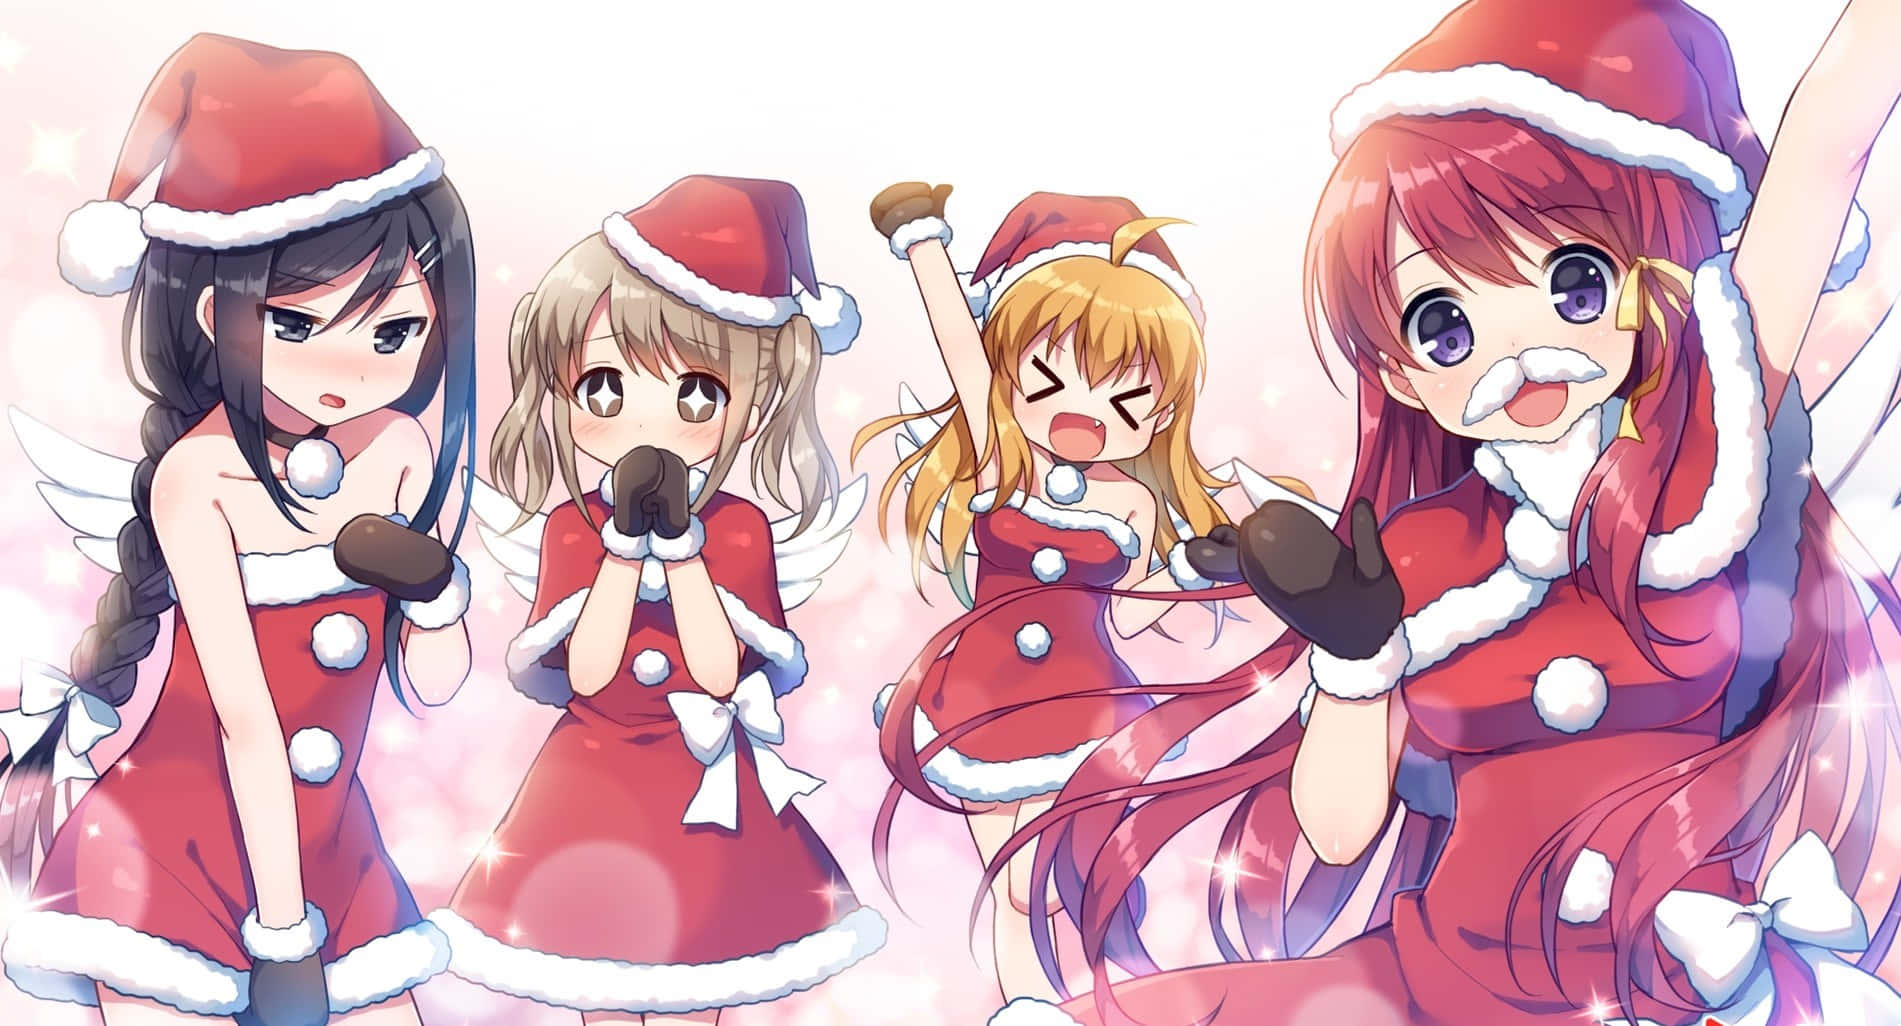 Weihnachtenkommt Früh Mit Diesem Anime-stil Festlichen Hintergrund.